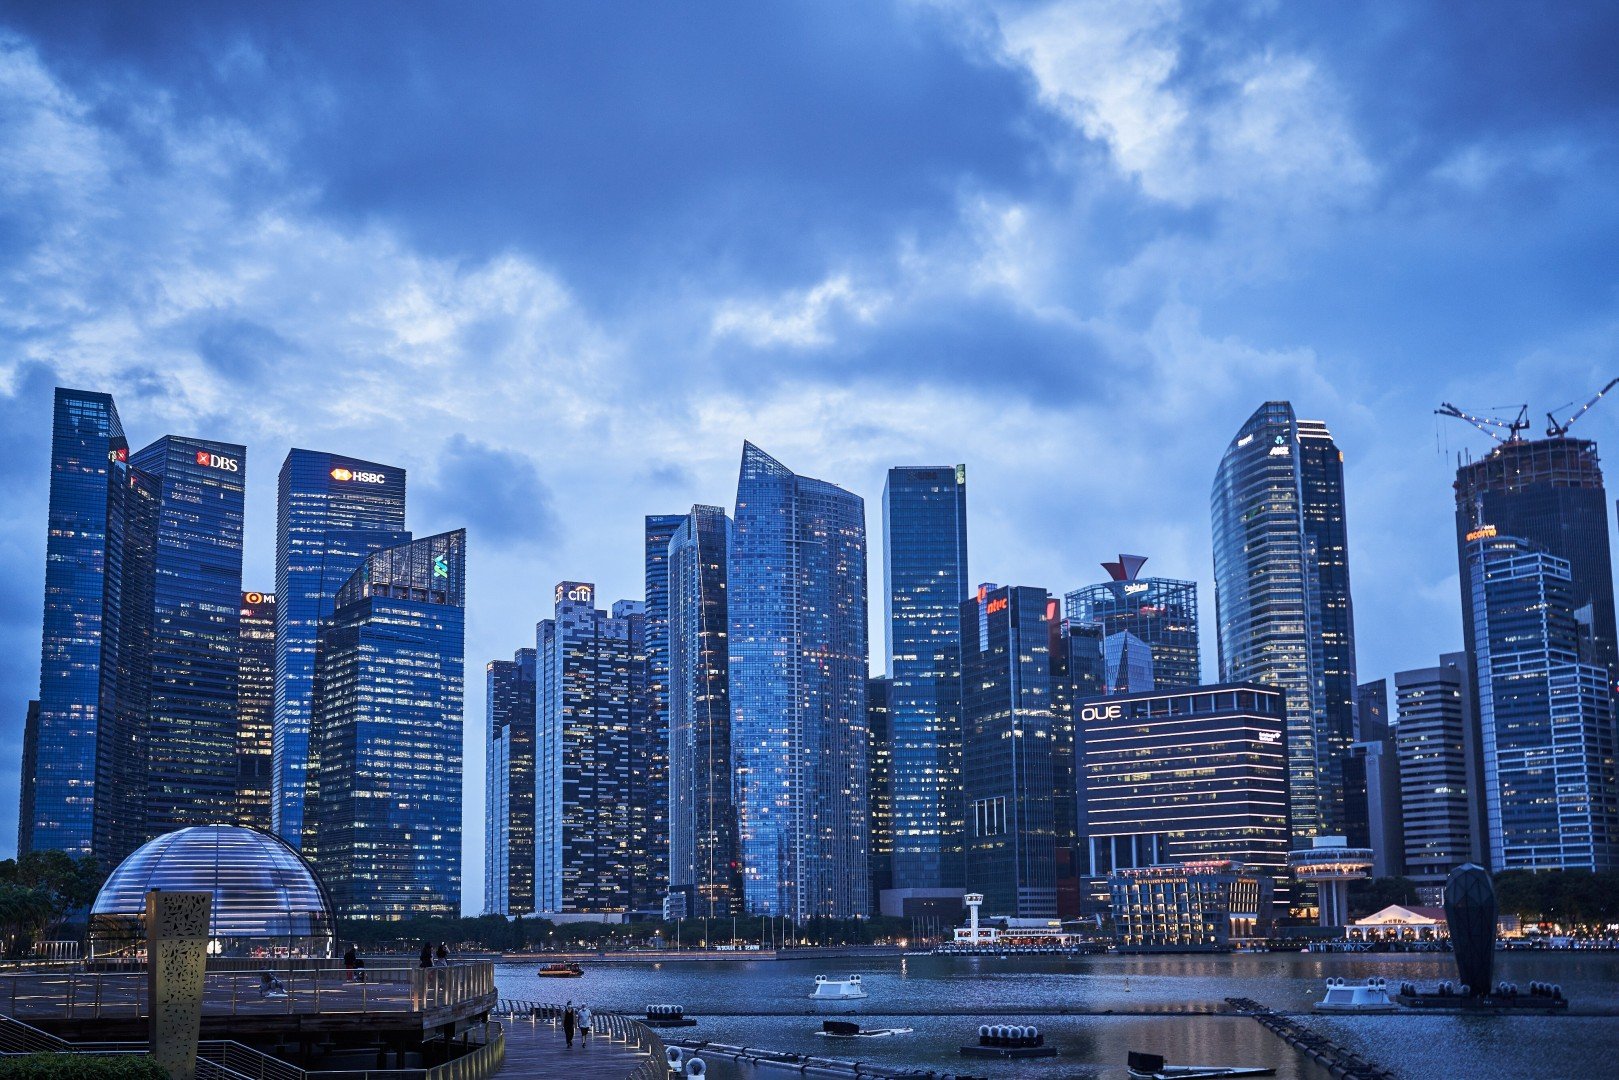 La Banca centrale di Singapore sostiene che le criptovalute sono pericolose per gli investitori al dettaglio - 085d92e6 75dc 11eb 8b9d 76c80a88a6d4 image hires 214955